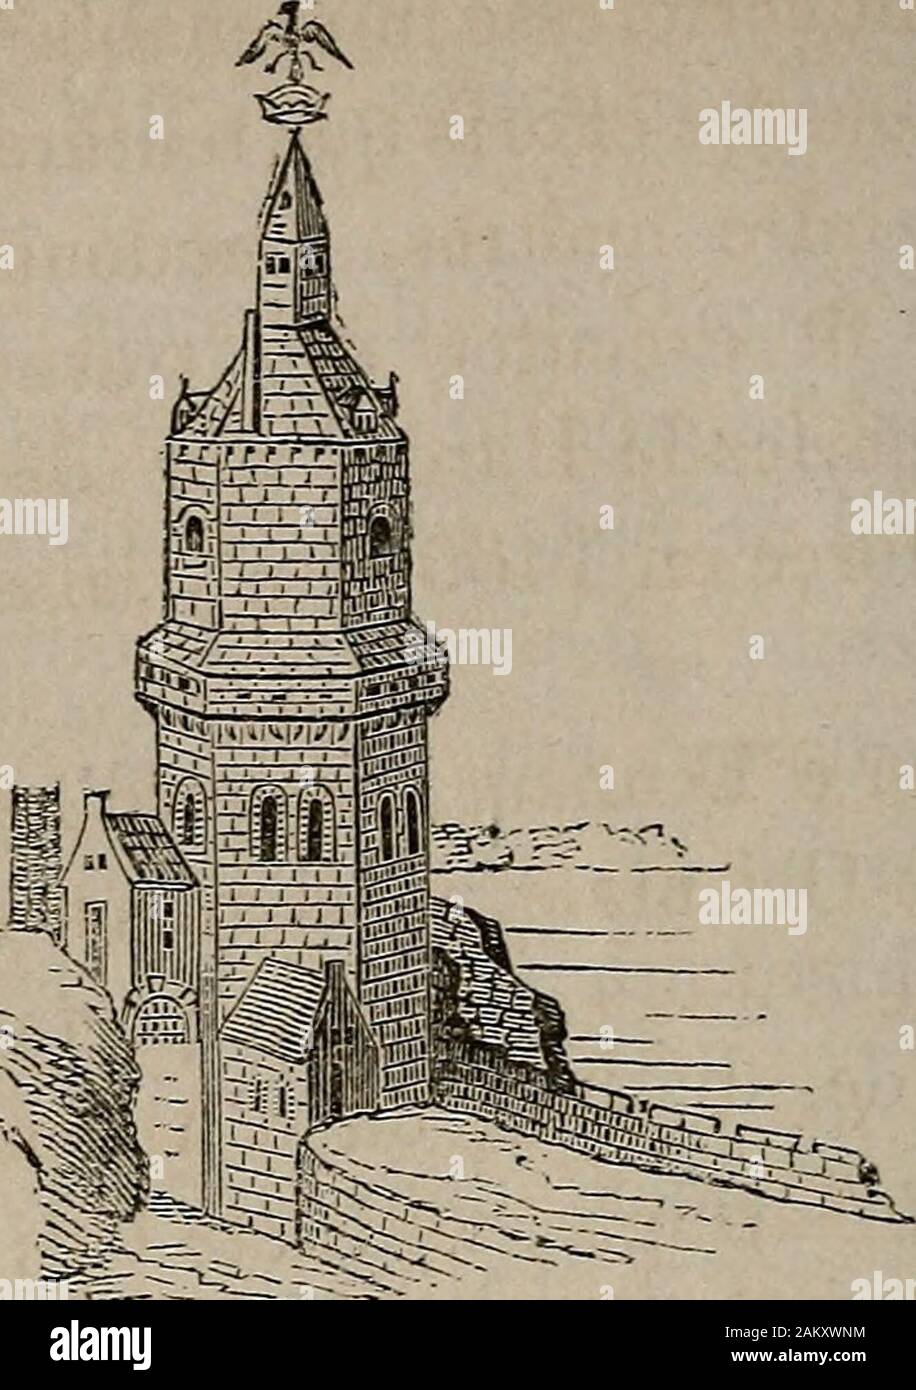 Histoire de l'architecture en Belgique : depuis les temps les plus reculés jusqu'à l'époque actuelle . i couvraient le vaste emplacementdu château actuel. Nous nous oornerons donc àrenvoyer nos lecteurs à la description assez exacteque Gaillot nous a donnée de cet édifice dans sonHistoire de la ville et province de Namur ^. La célèbre tour ou donjon, connue sous le nomflamand de Croonenburg toren (château de la cou-ronne), élevée à Anvers en 1145 pour marquer leslimites de Tempire, mérite aussi une mention spé-ciale. Cette tour qui subsista jusquen 1566, et quereprésente la gravure suivante, f Stock Photo